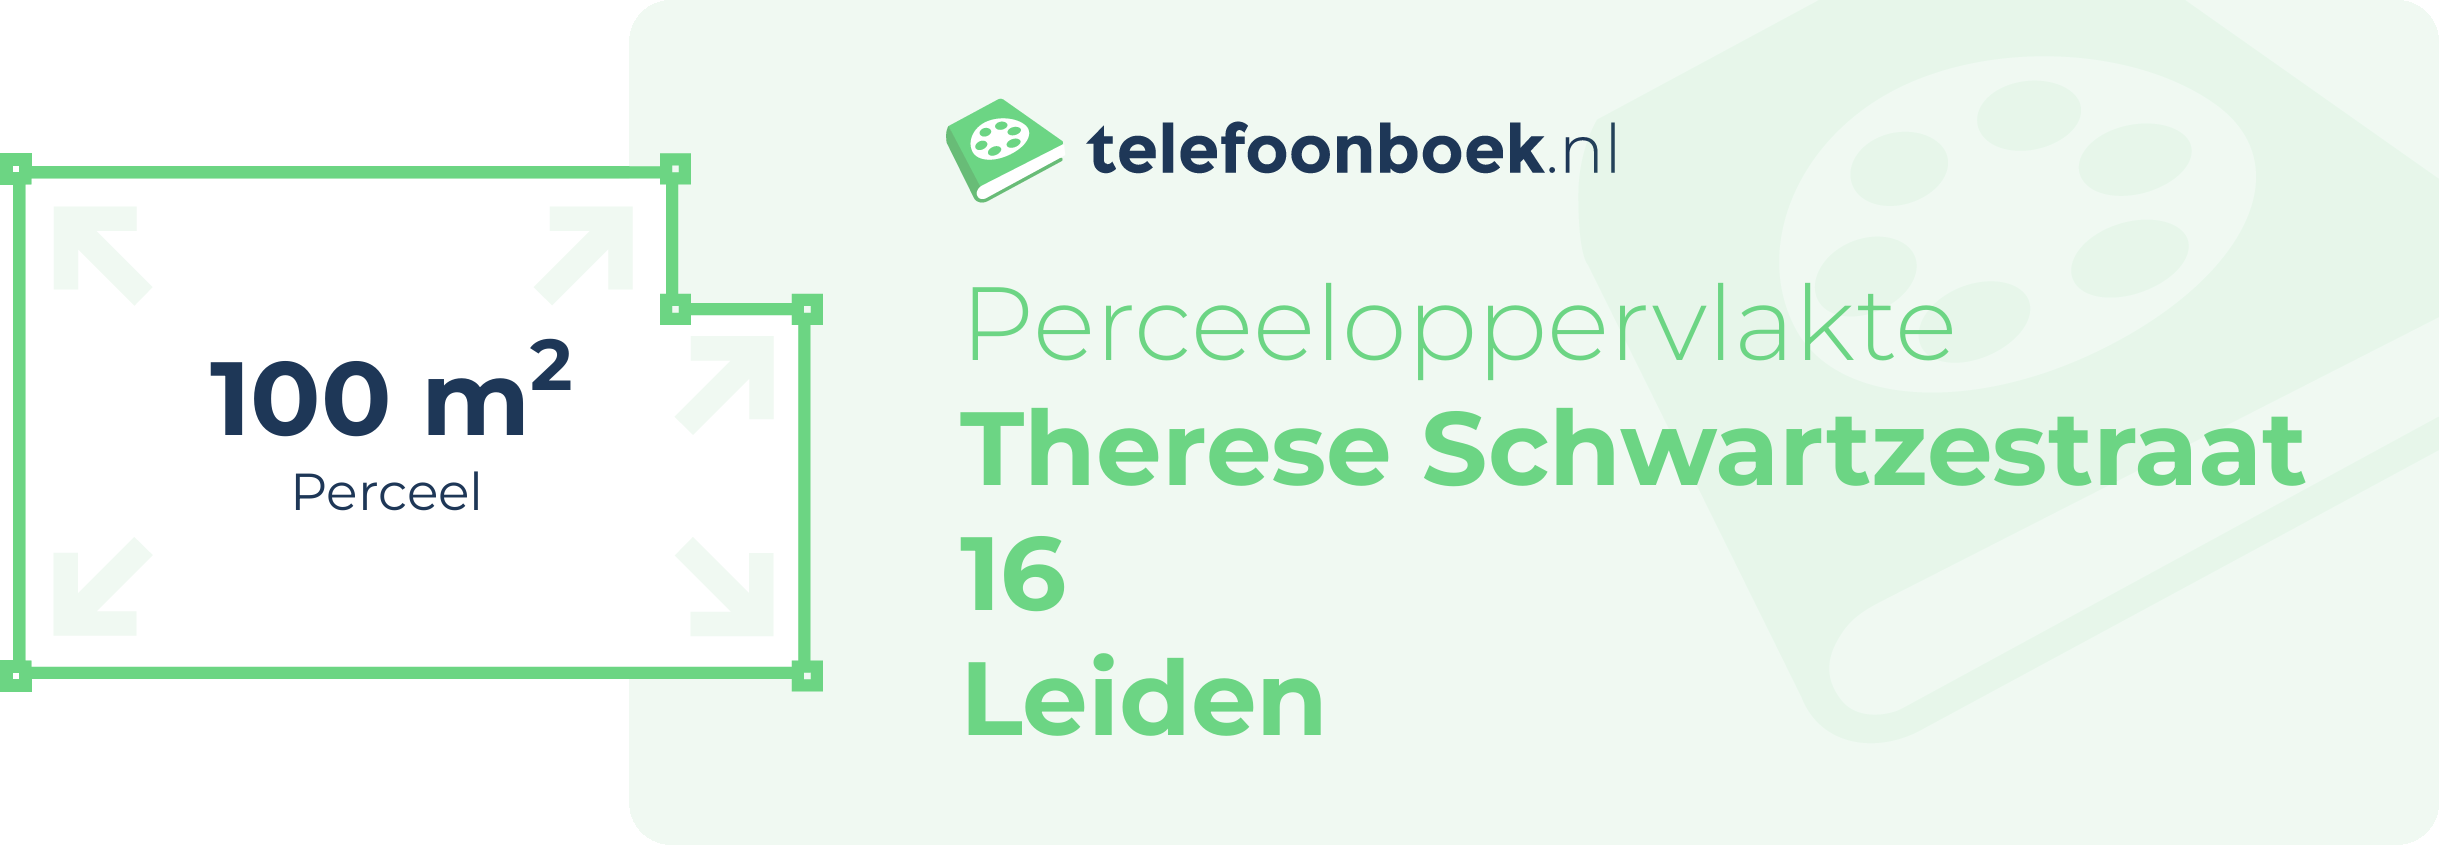 Perceeloppervlakte Therese Schwartzestraat 16 Leiden